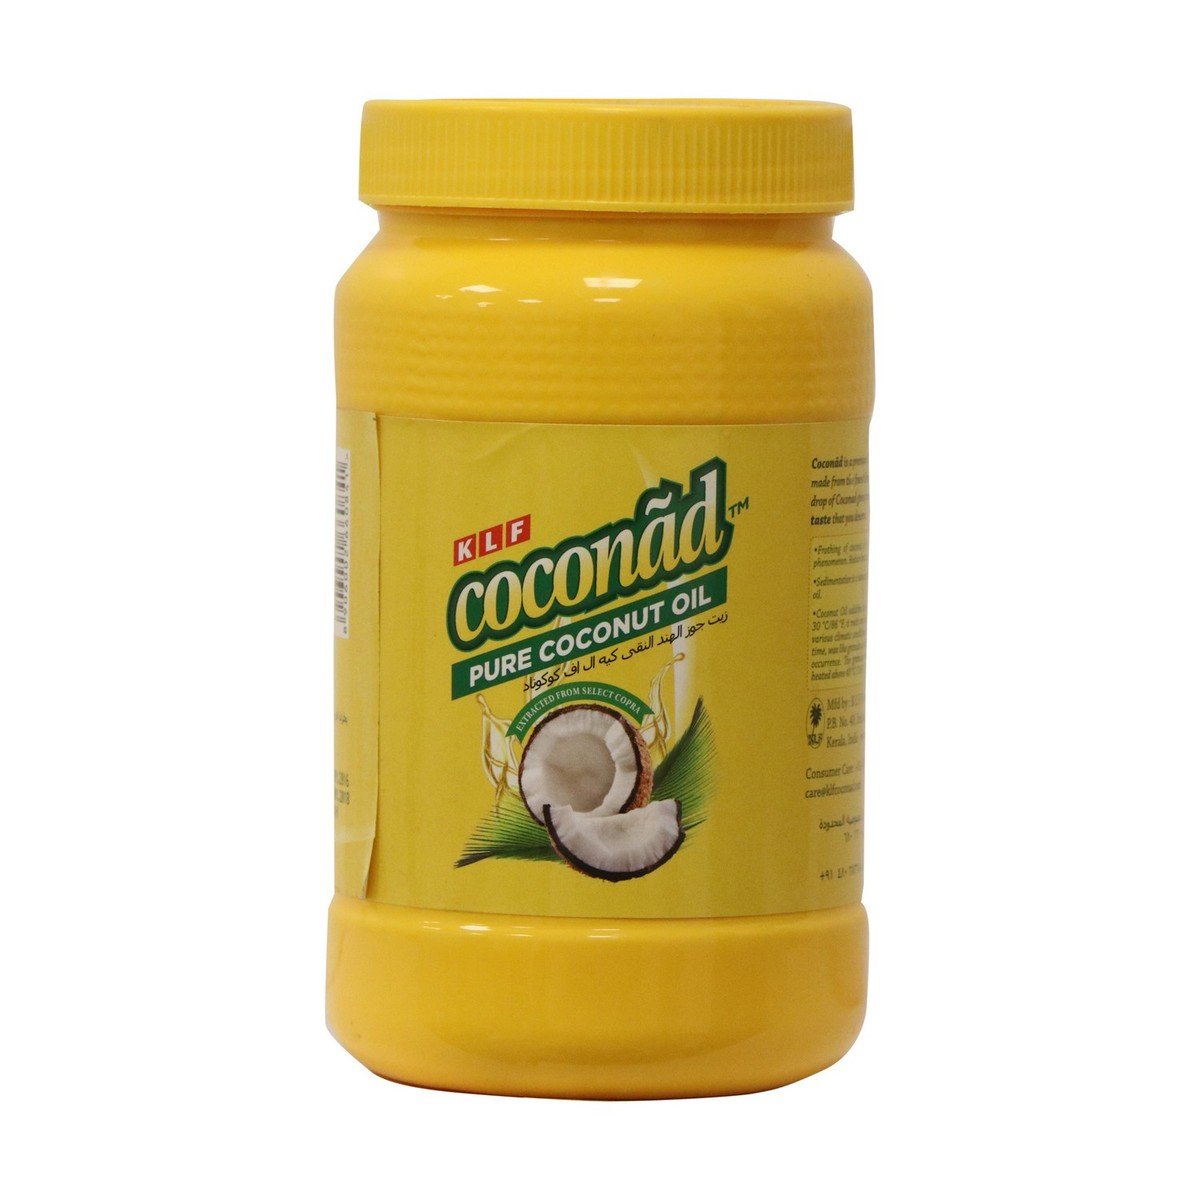 KLF Coconad Pure Coconut Oil 720ml